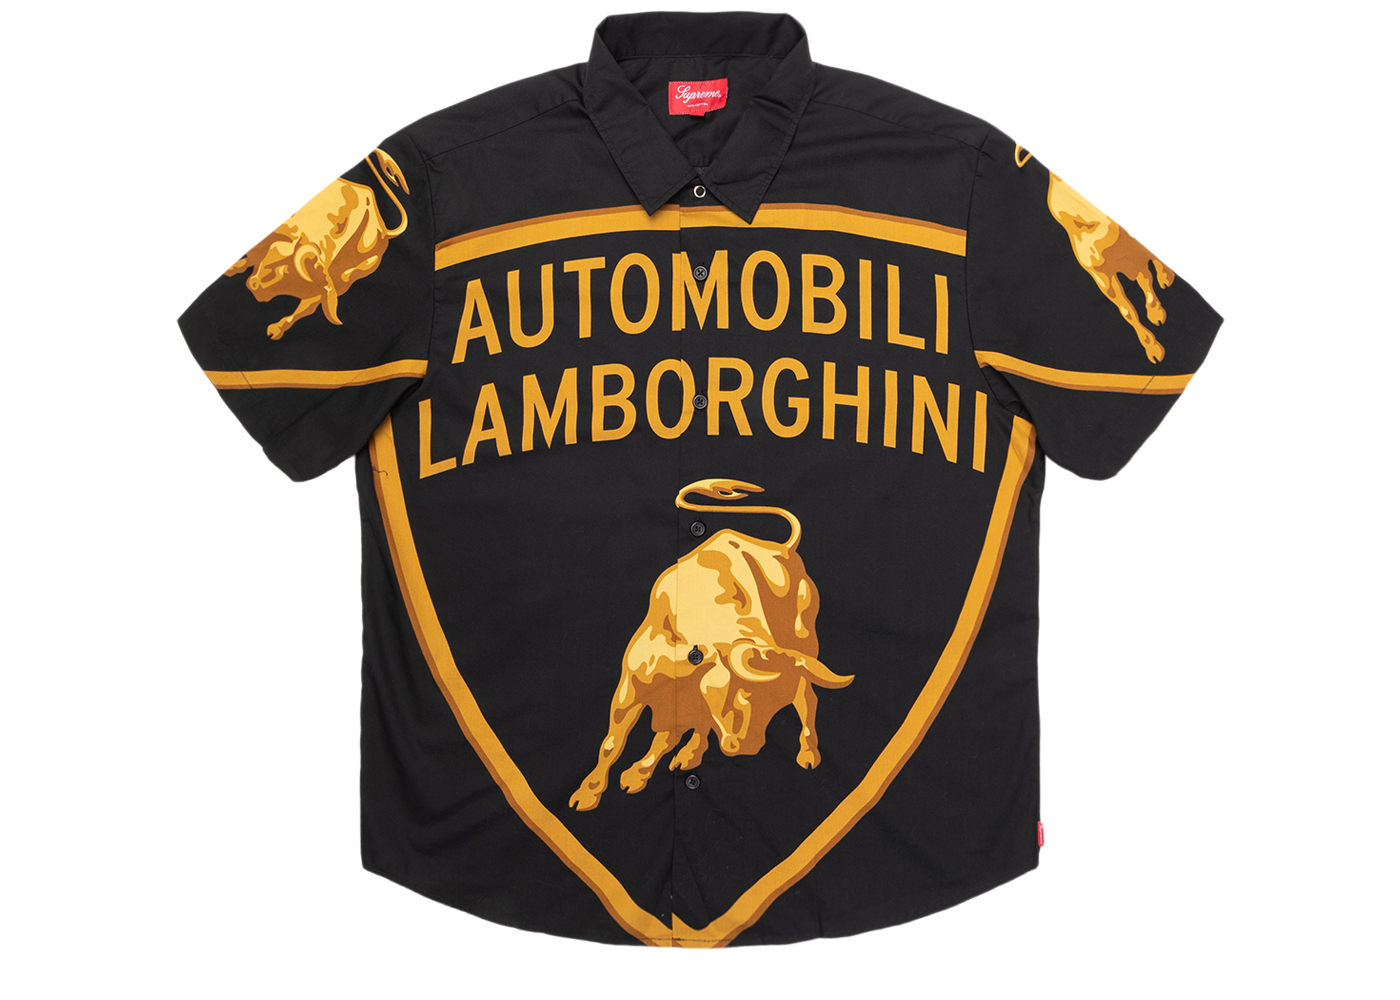 Supreme Automobili Lamborghini S/S Shirt Black - SS20 Men's - US